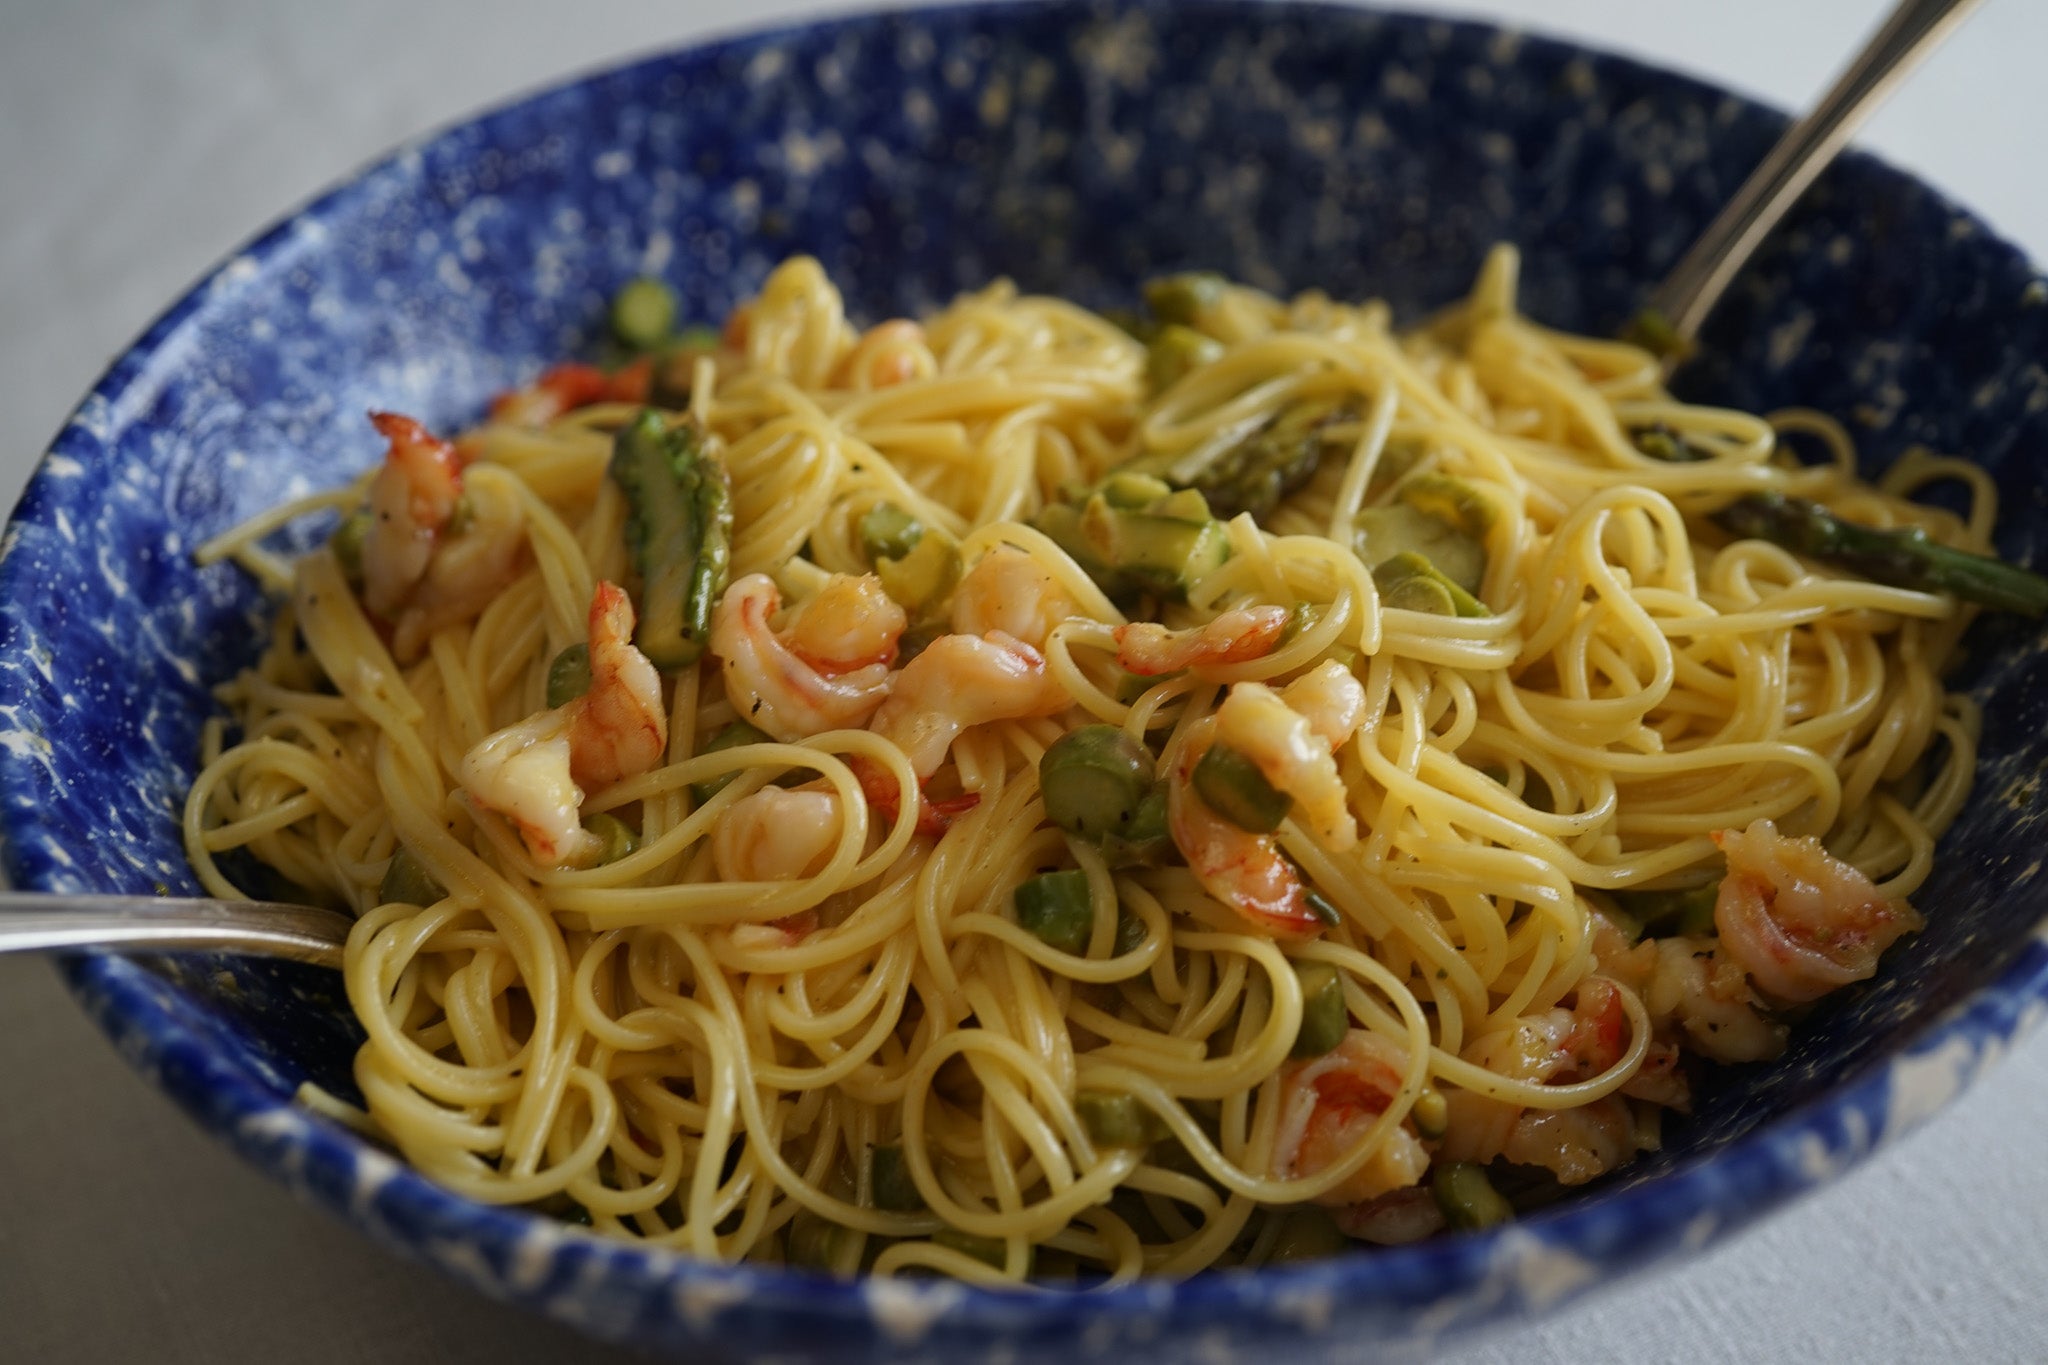 Shrimp and asparagus carbonara